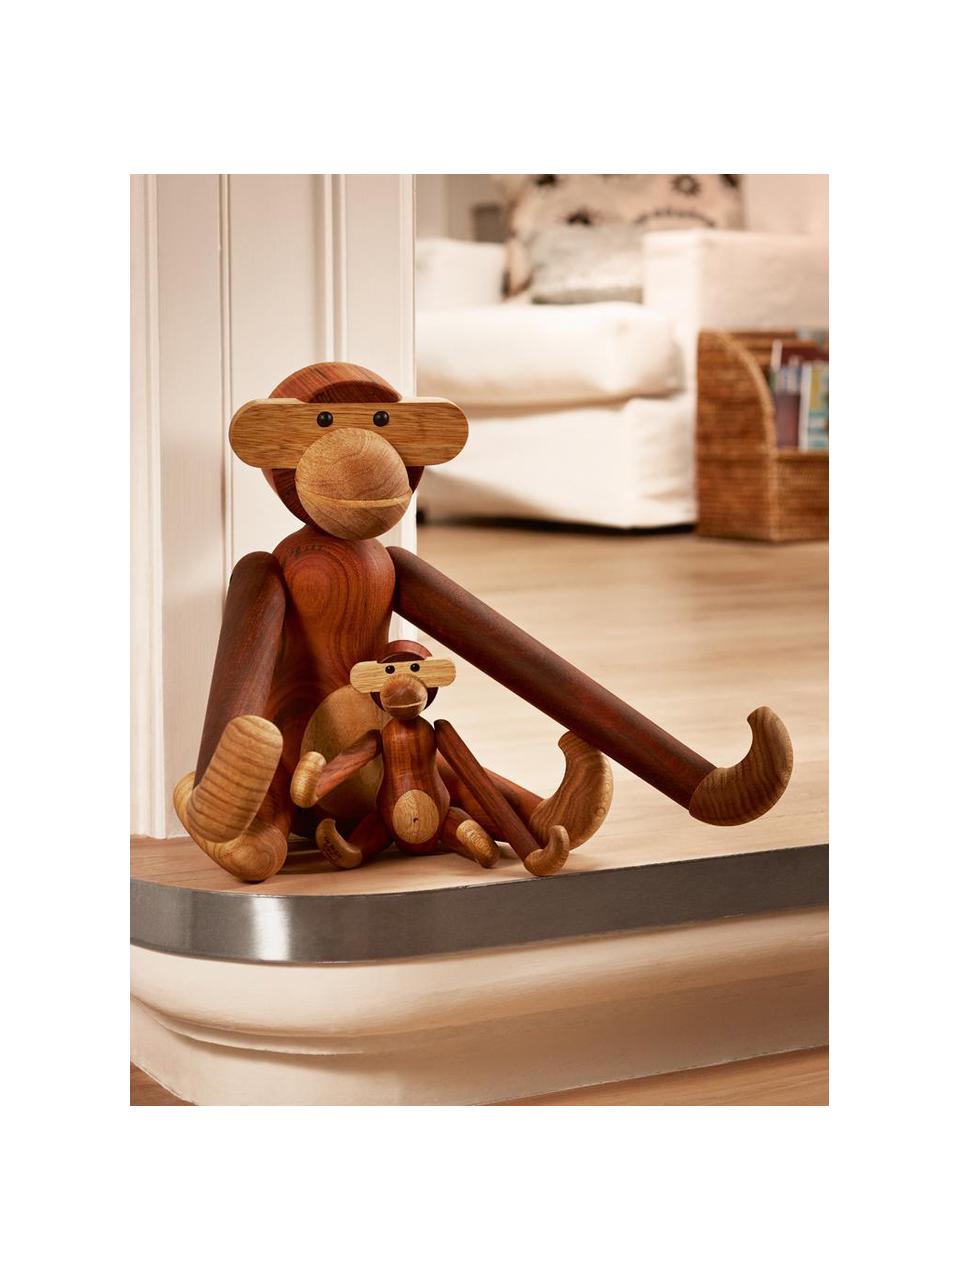 Handgefertigtes Deko-Objekt Monkey aus Teakholz, H 19 cm, Teakholz, Limbaholz, lackiert

Dieses Produkt wird aus nachhaltig gewonnenem, FSC®-zertifiziertem Holz gefertigt., Teakholz, Limbaholz, B 20 x H 19 cm